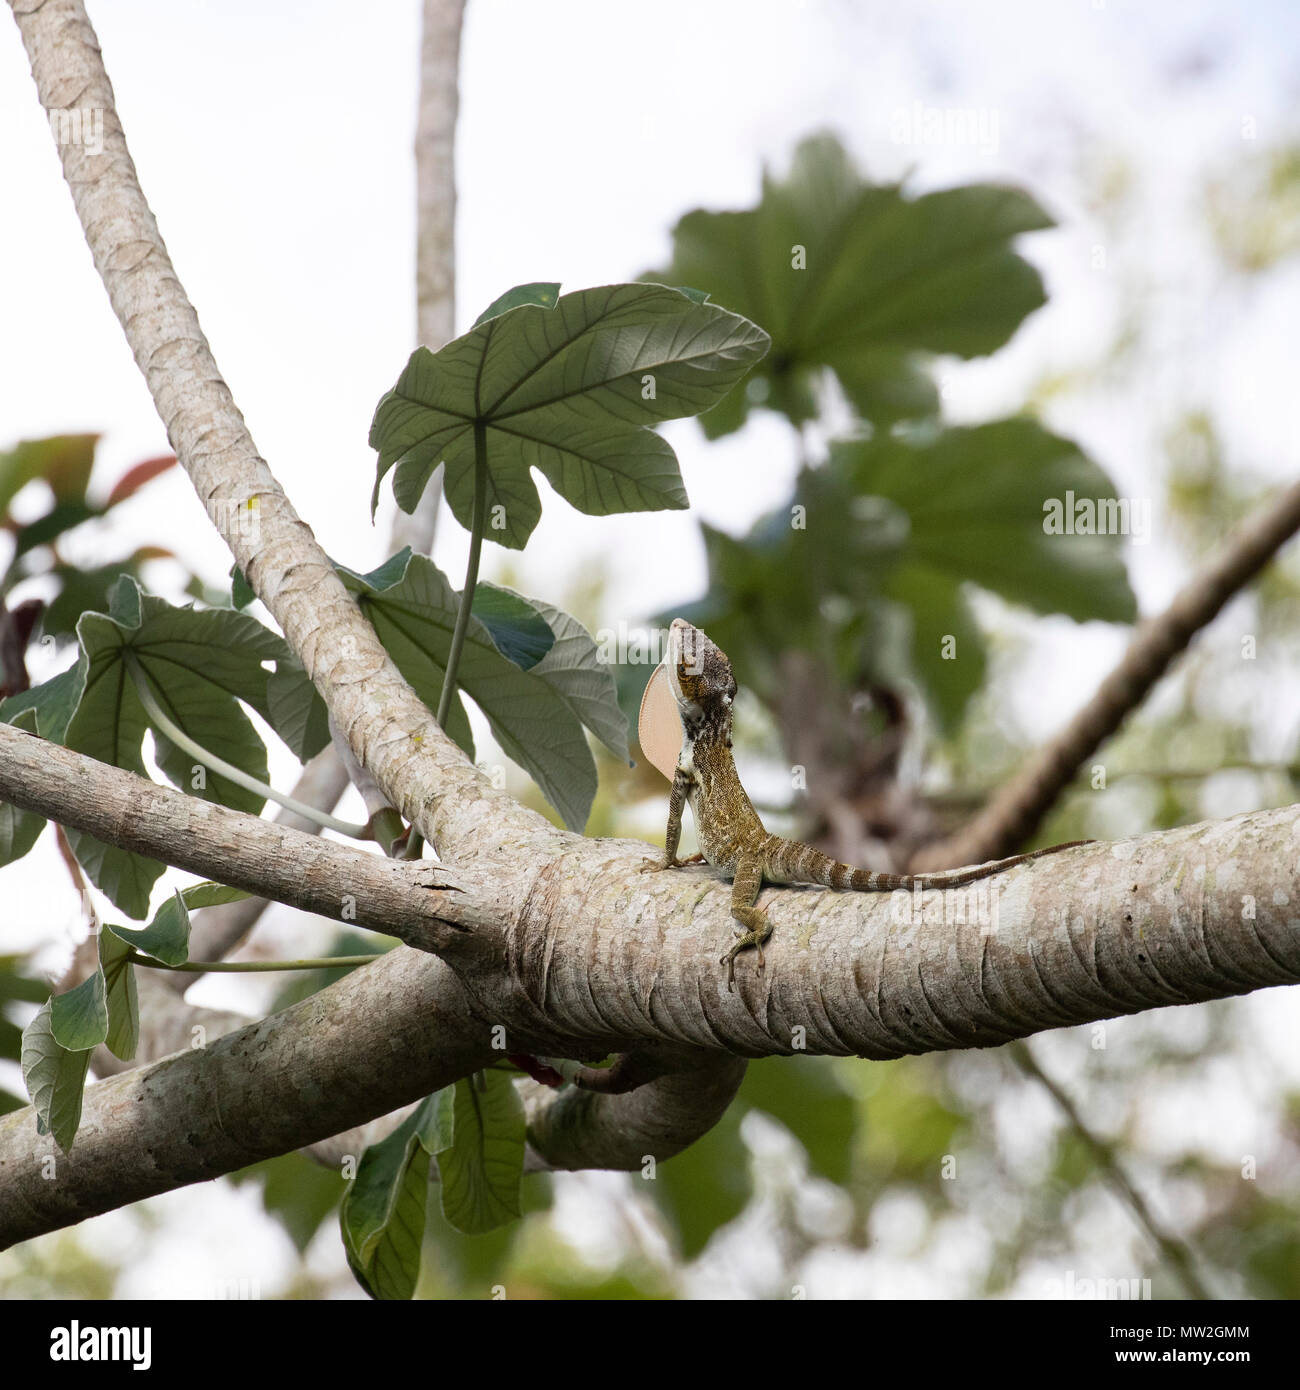 Cuban false chameleon extending its neck pouch Stock Photo